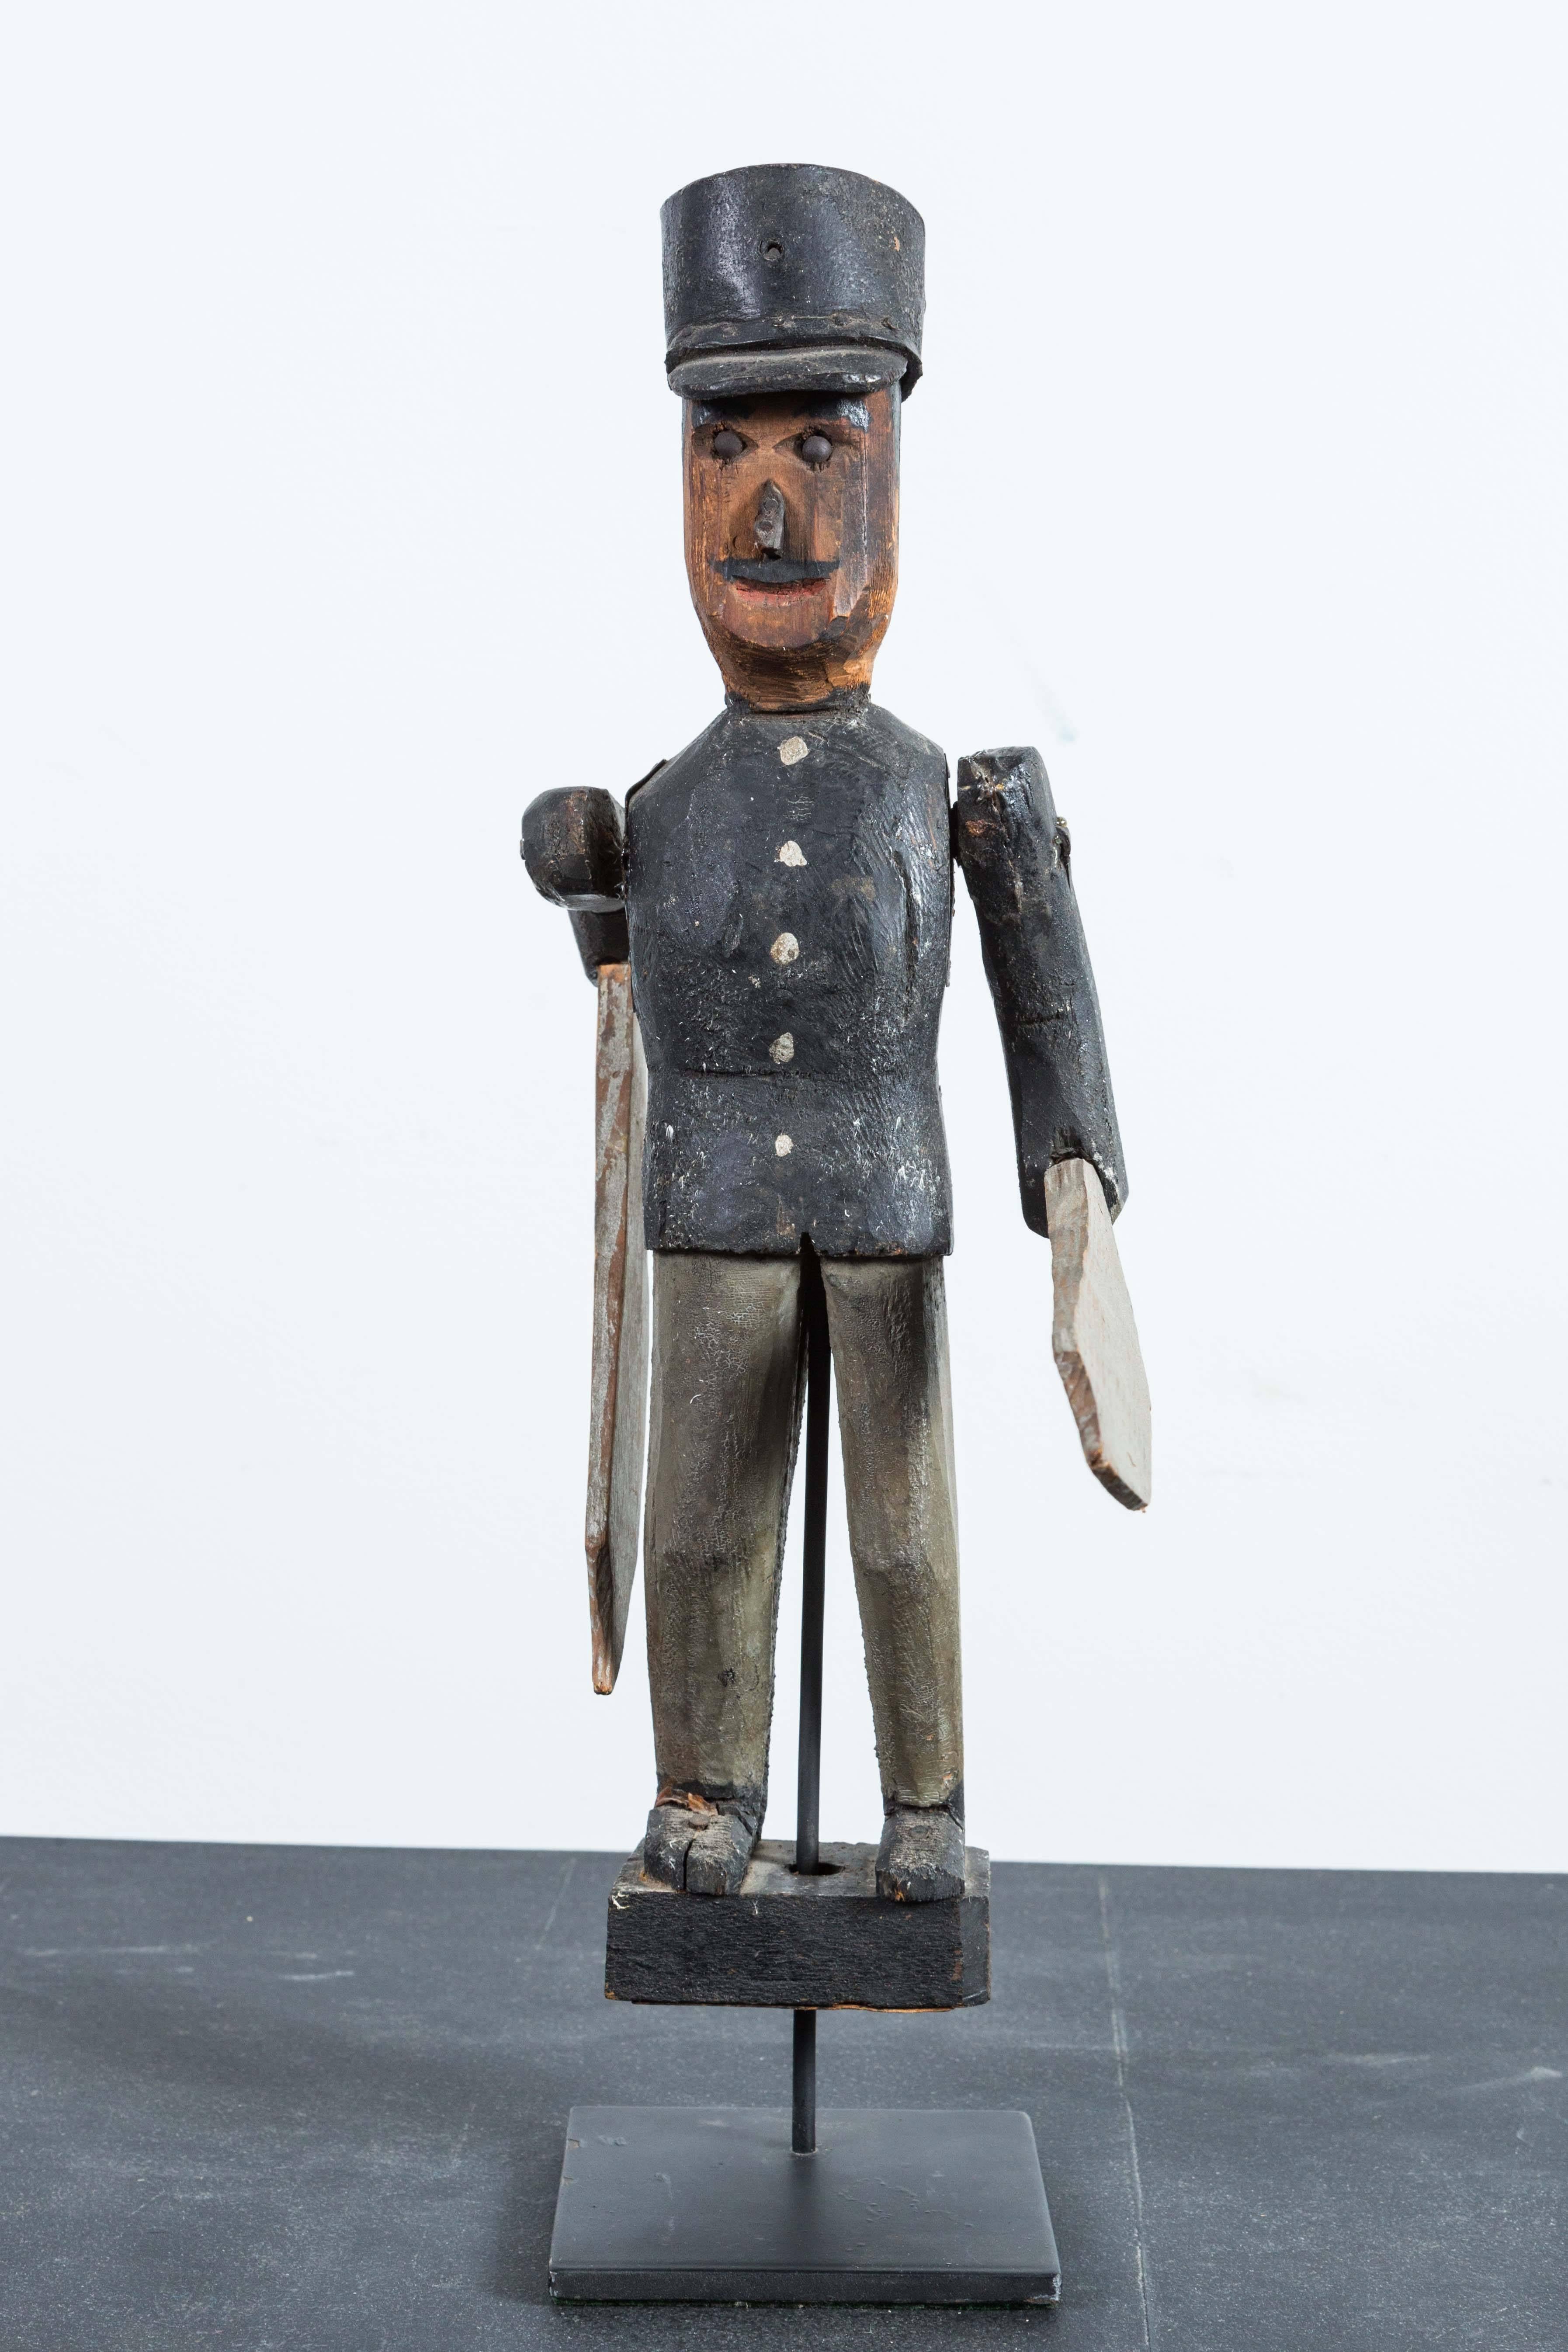 Tourbillon soldat en bois sculpté et peint. Début du 20e siècle américain. Le soldat porte un chapeau en cuir avec des bords en bois. Présenté sur un simple support de musée personnalisé.